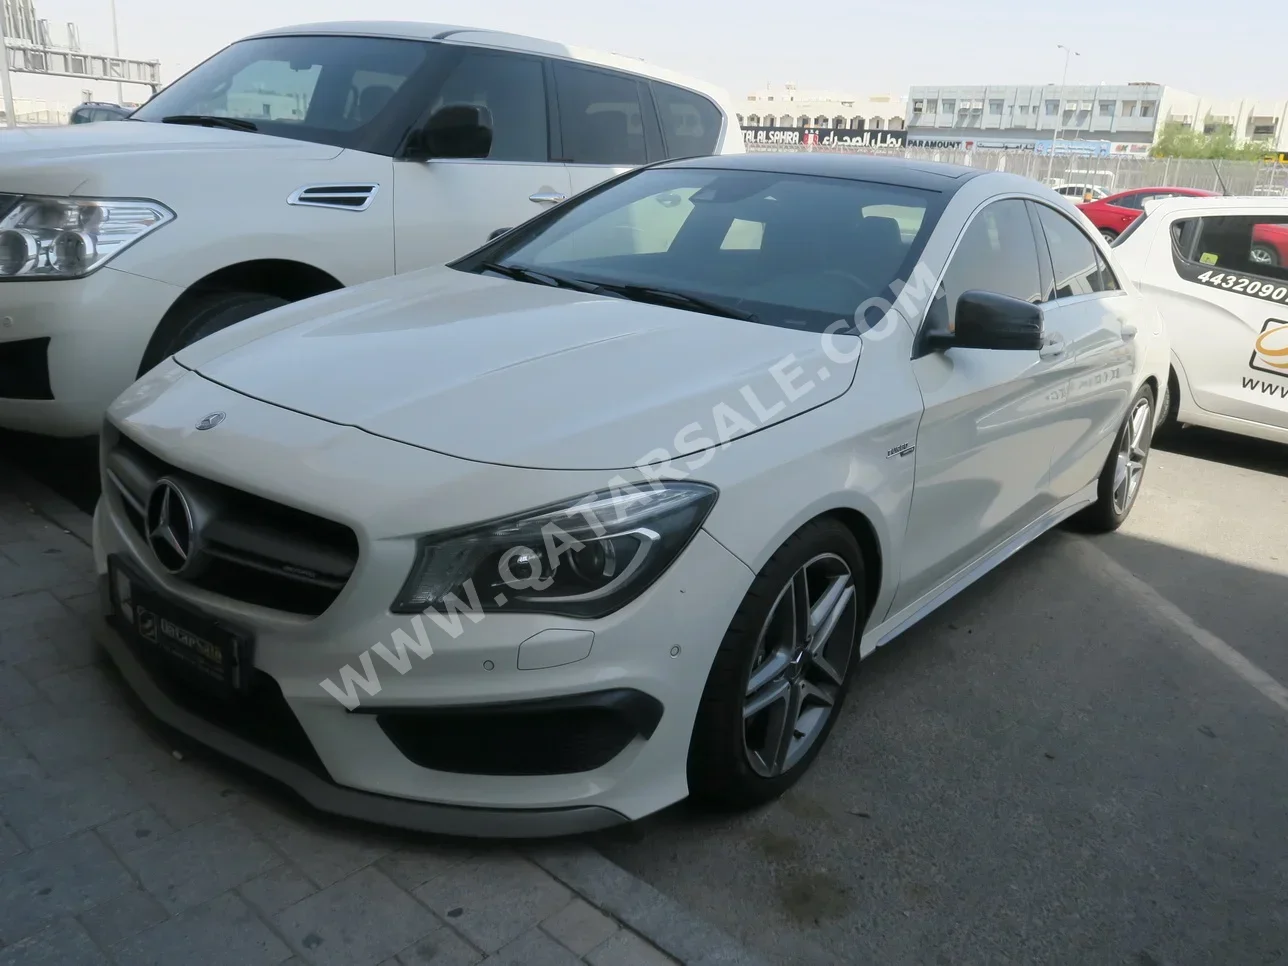 Mercedes-Benz  CLA  45 AMG  2015  Automatic  126,000 Km  4 Cylinder  Rear Wheel Drive (RWD)  Sedan  White